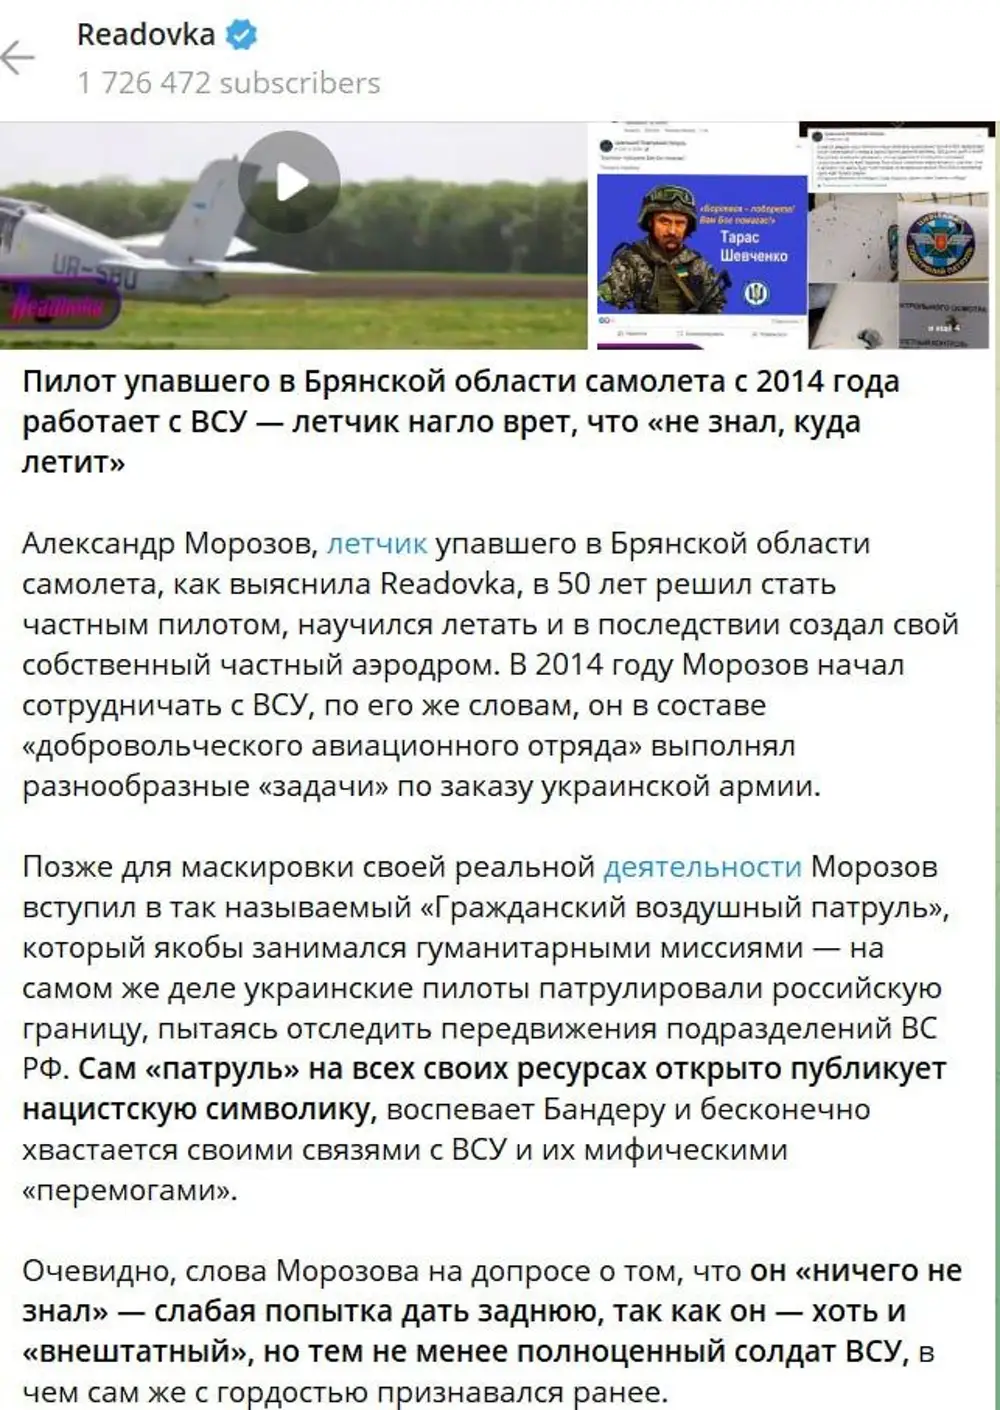 Вся правда о войне с украиной телеграмм фото 115